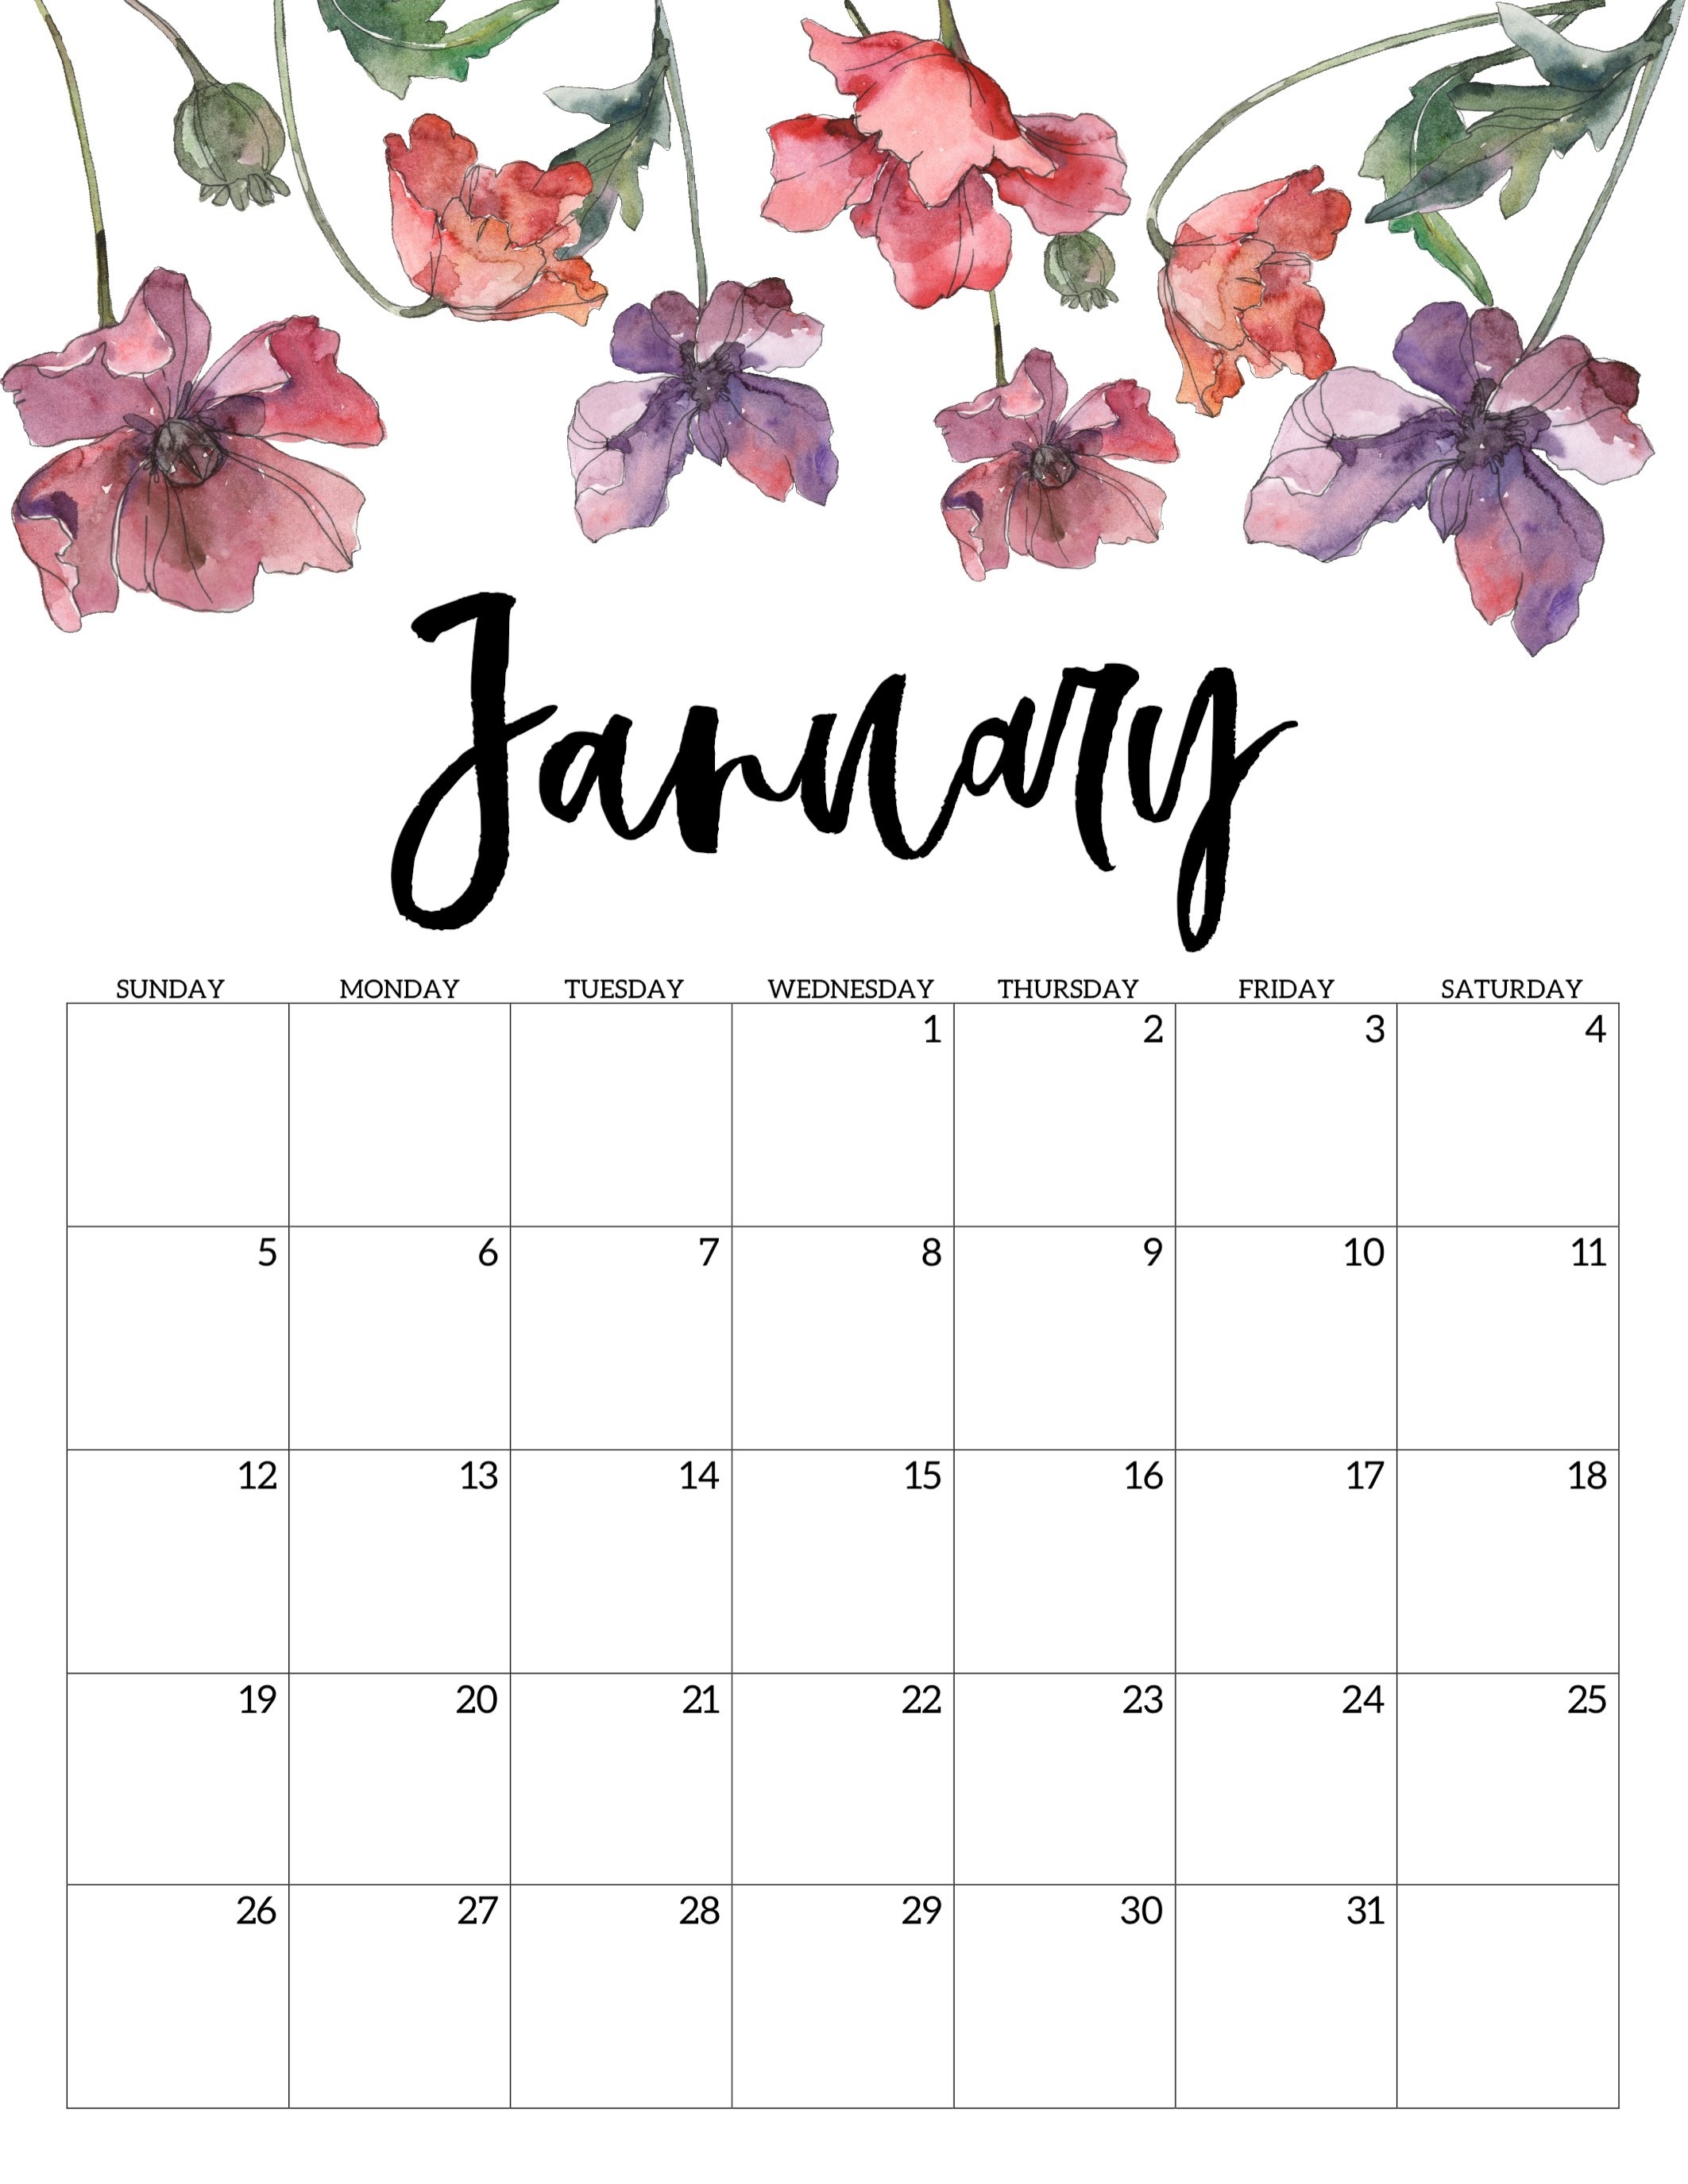 Calendar Of January 2020-Las Vegas Calendar January 2020